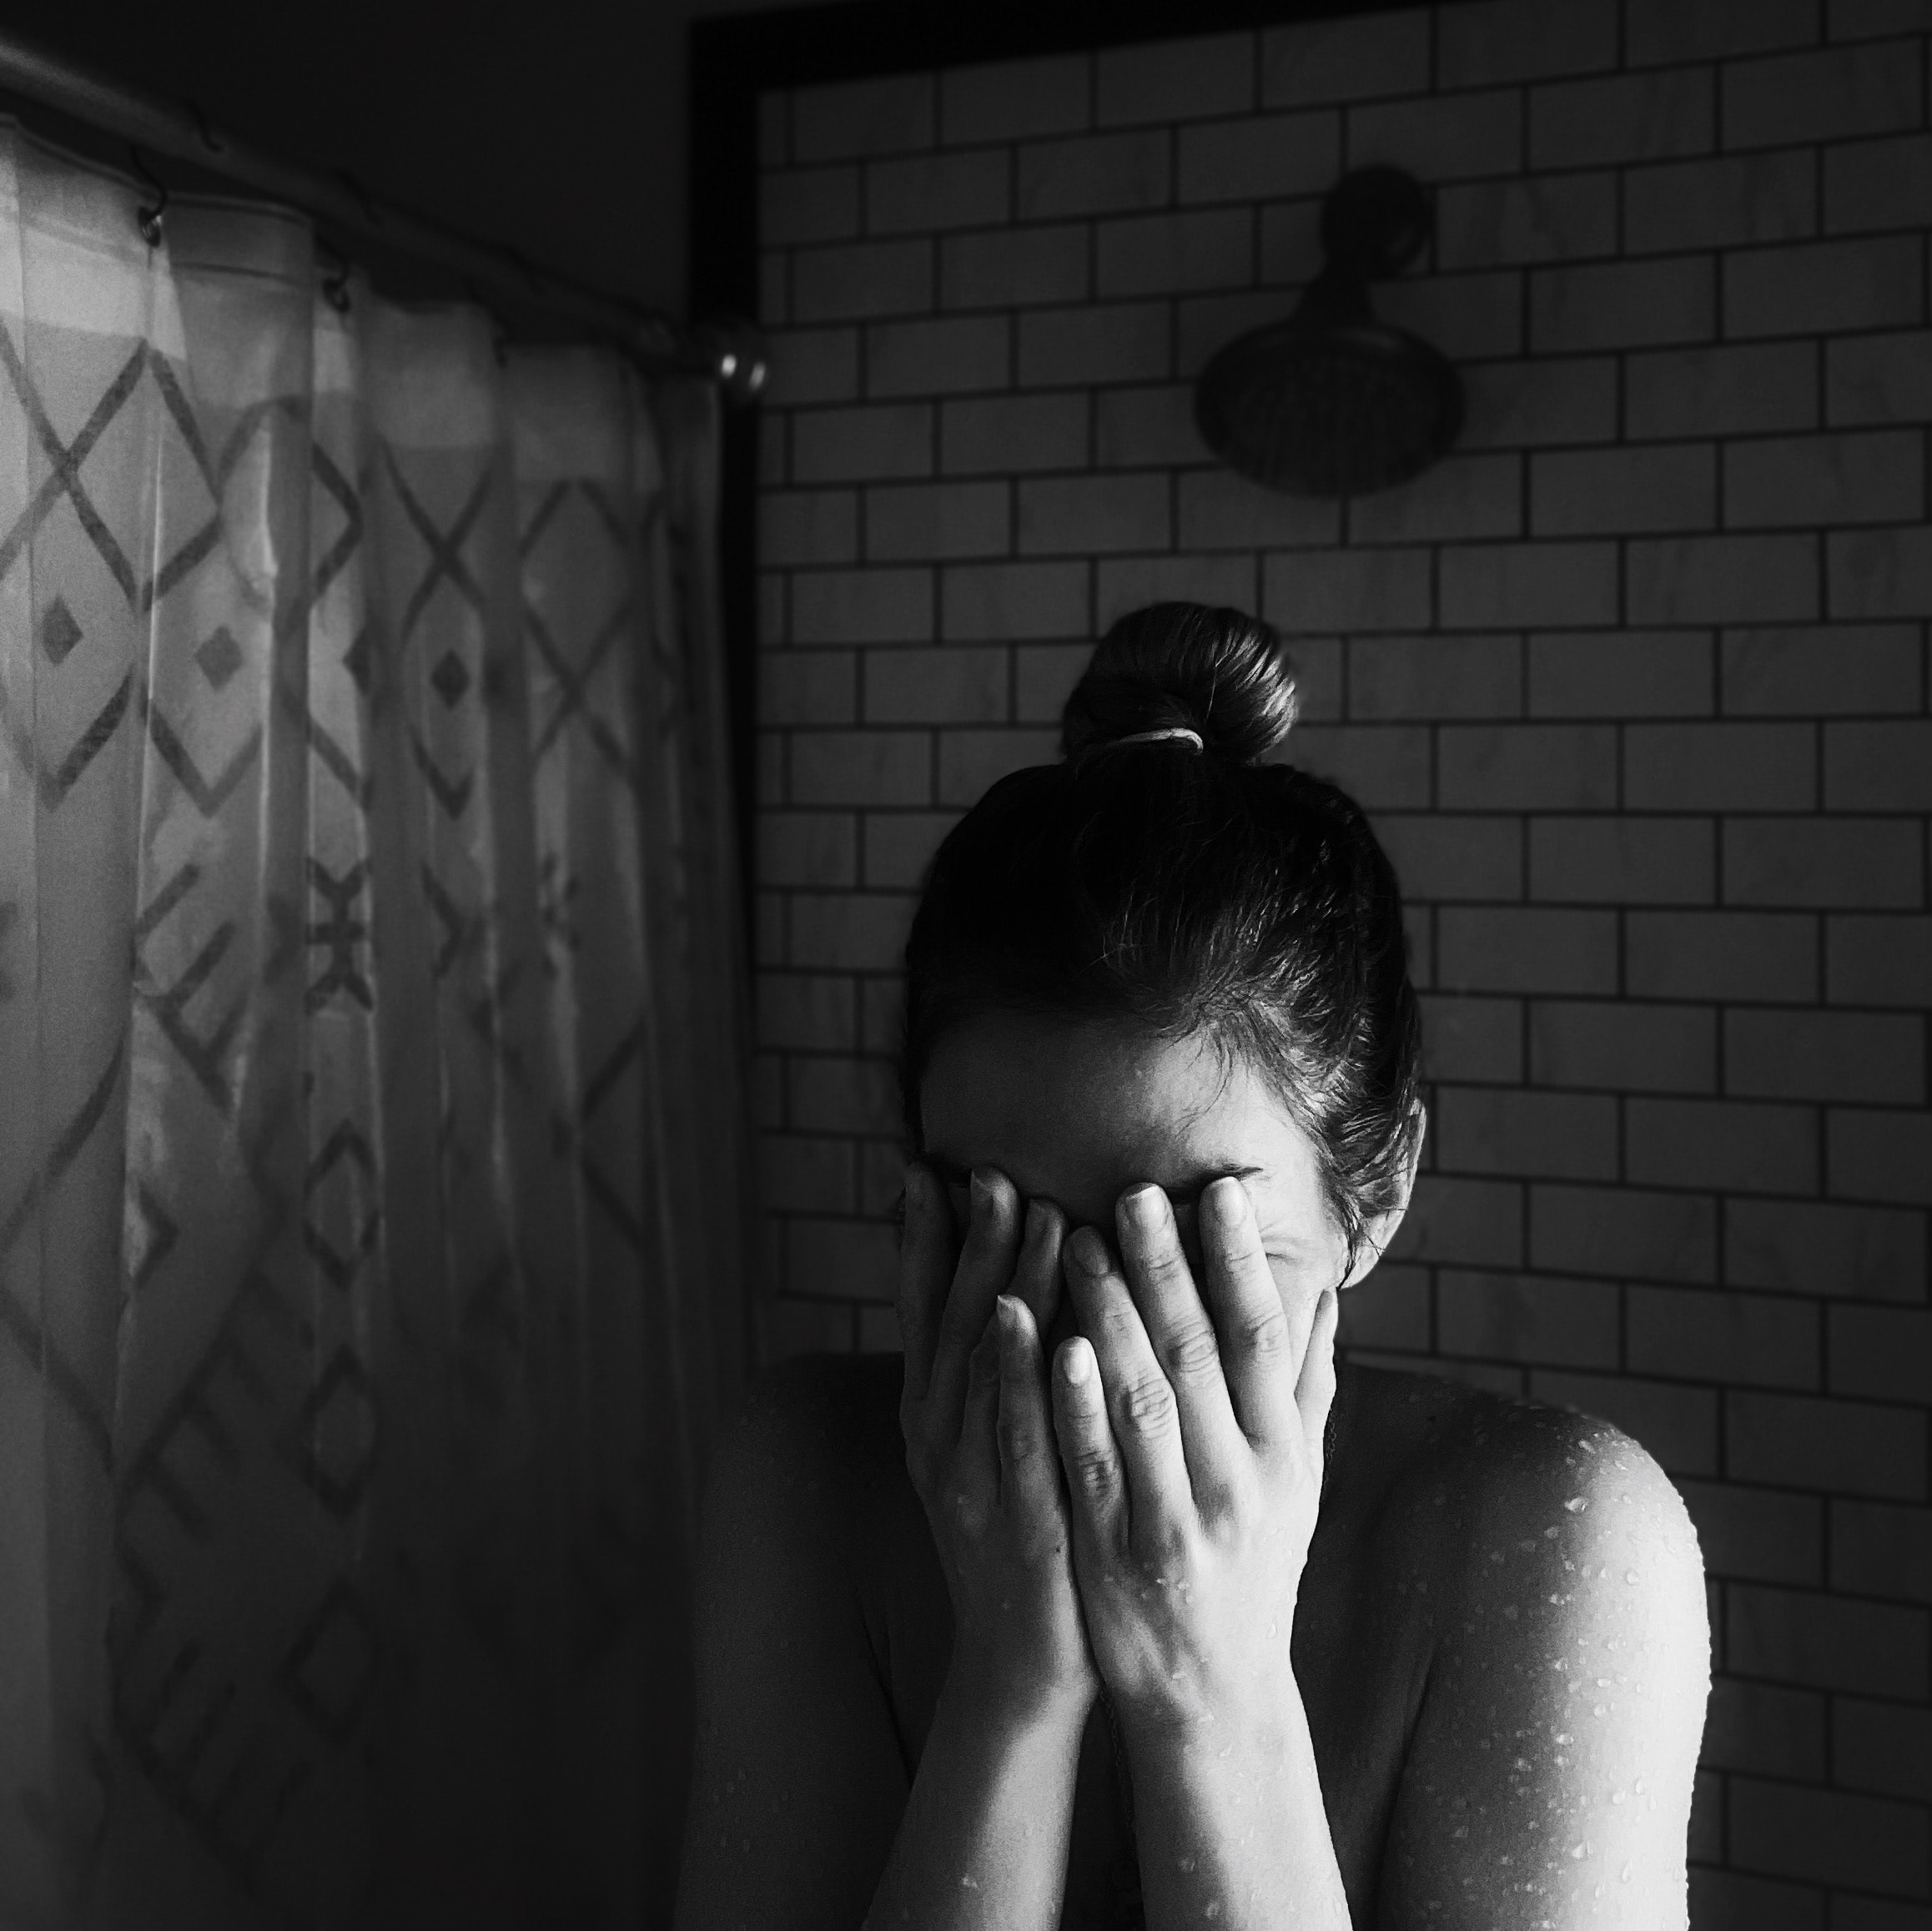 Sad woman in shower; image by Meghan Hessler, via Unsplash.com.